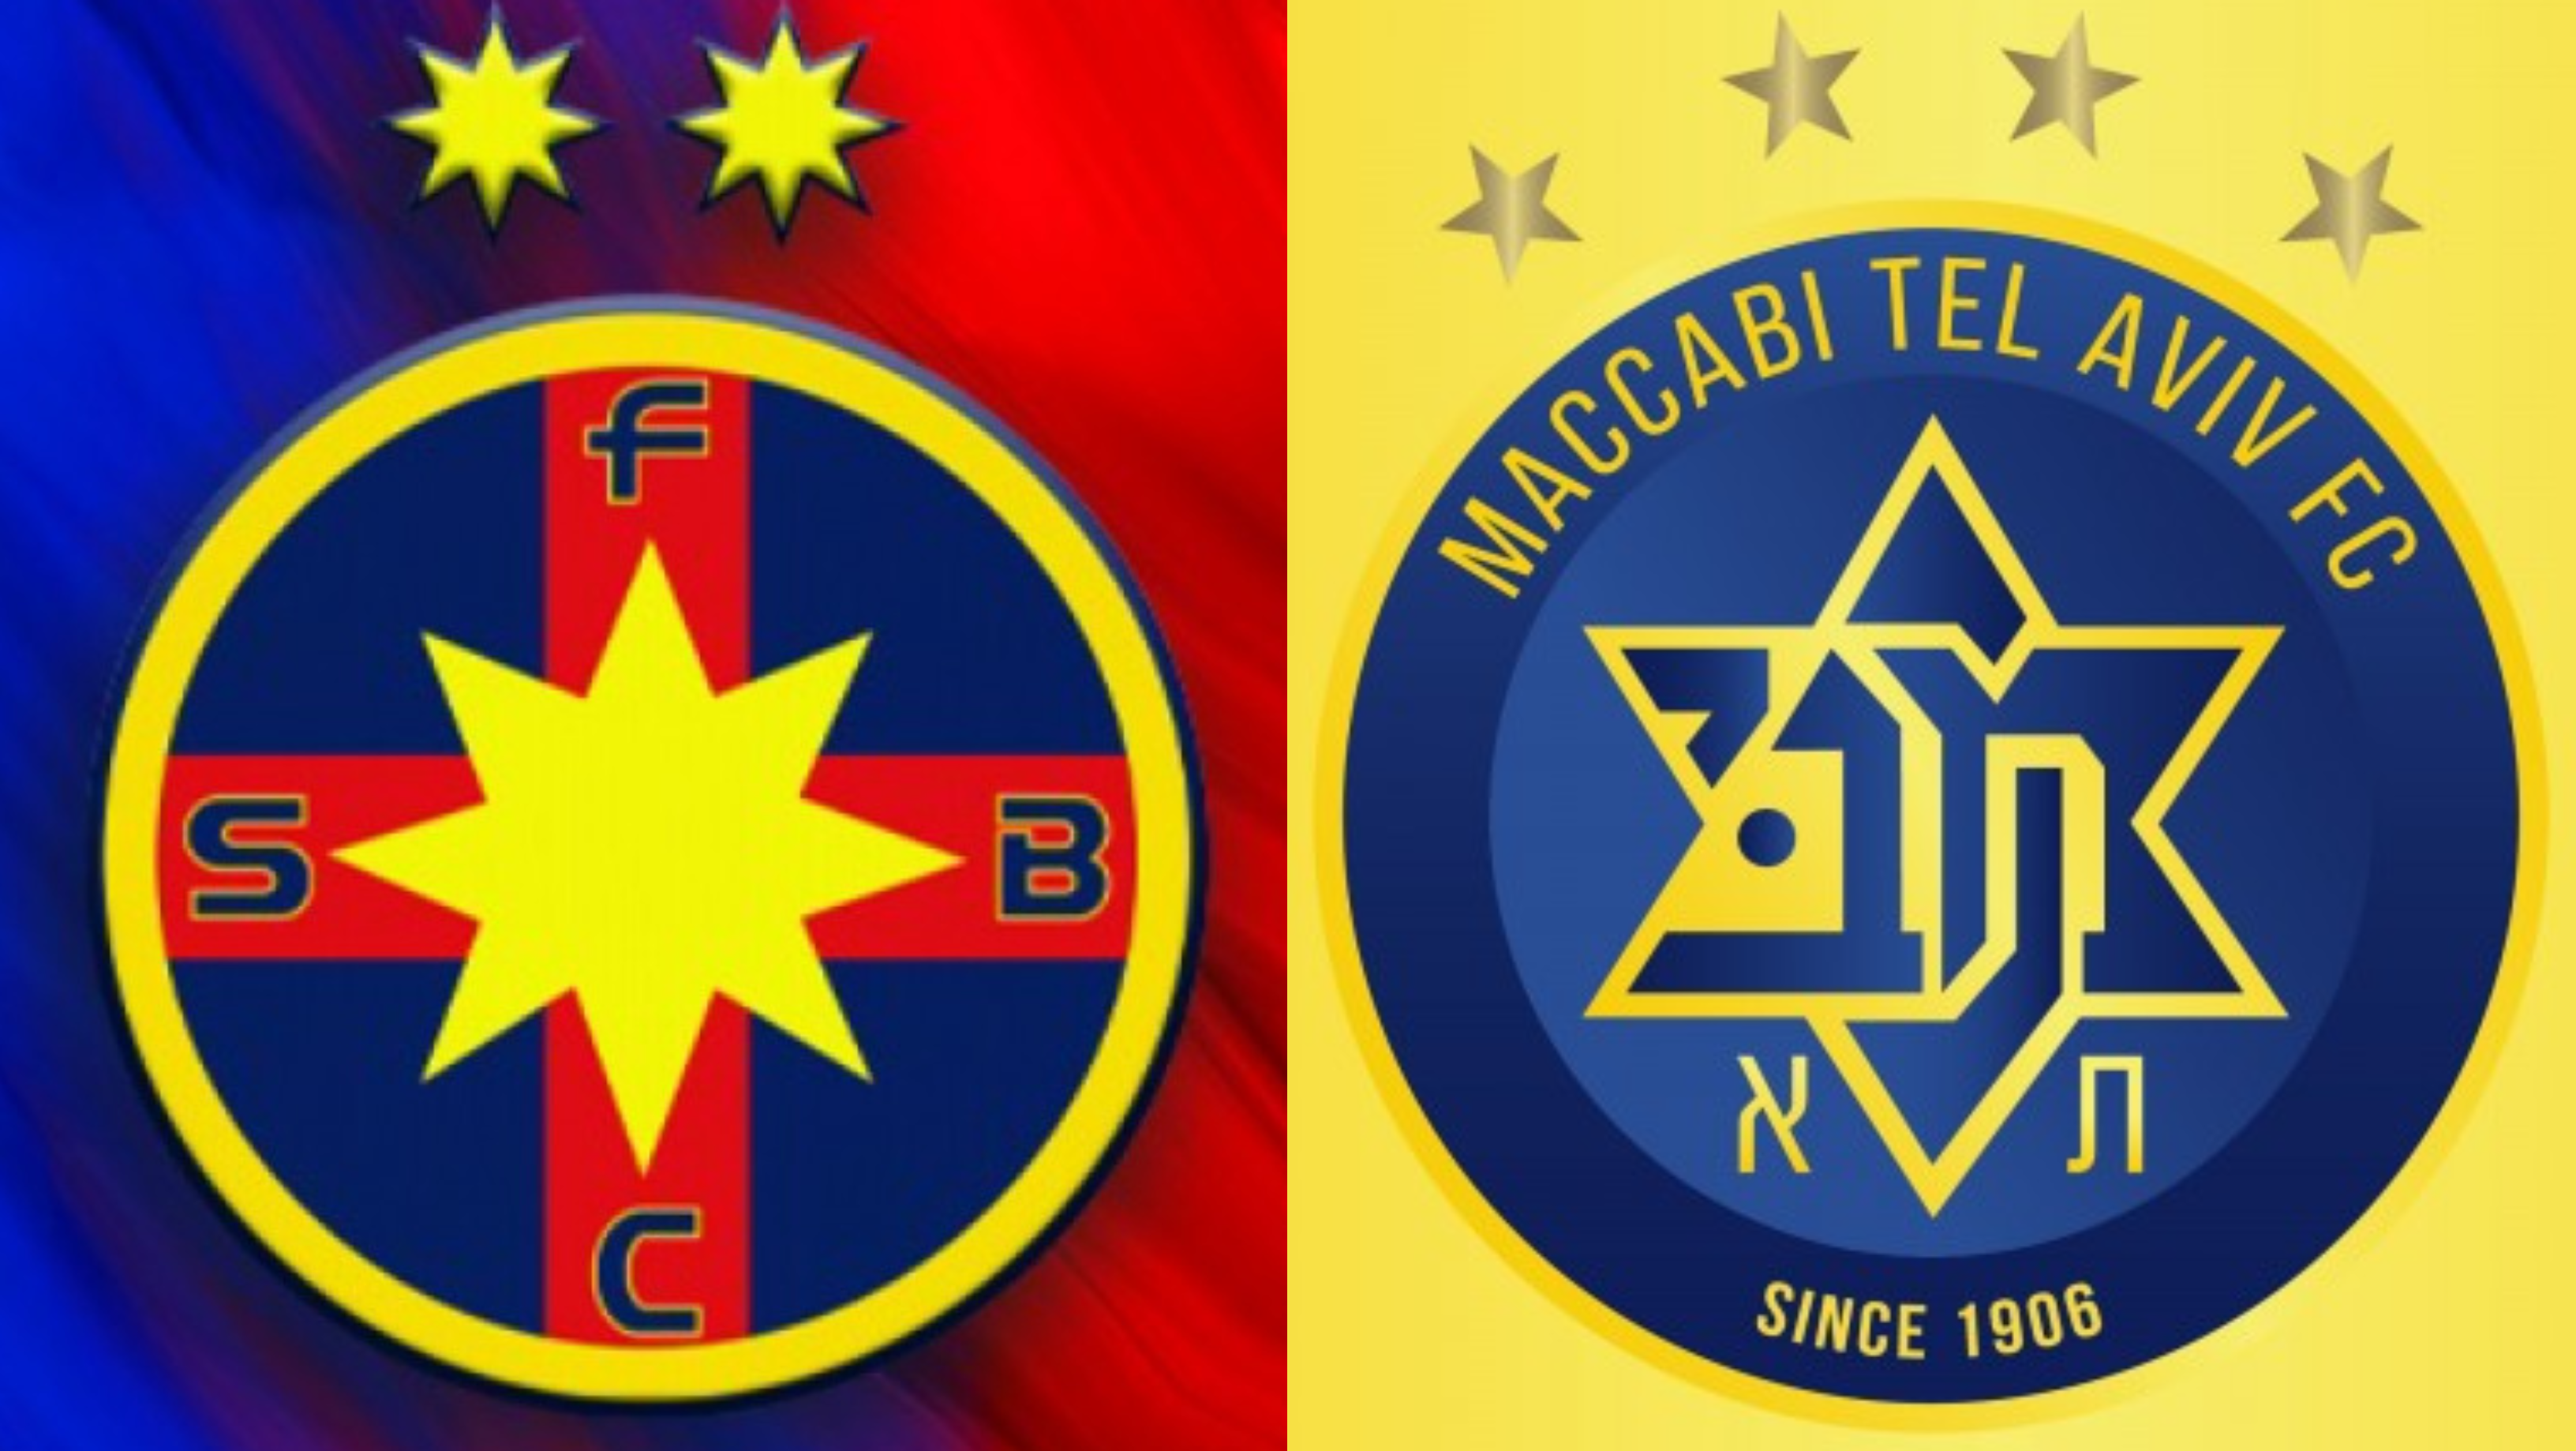 FCSB a mai primit o veste grozavă! Maccabi Tel Aviv, decizie radicală cu doar două zile înaintea meciului